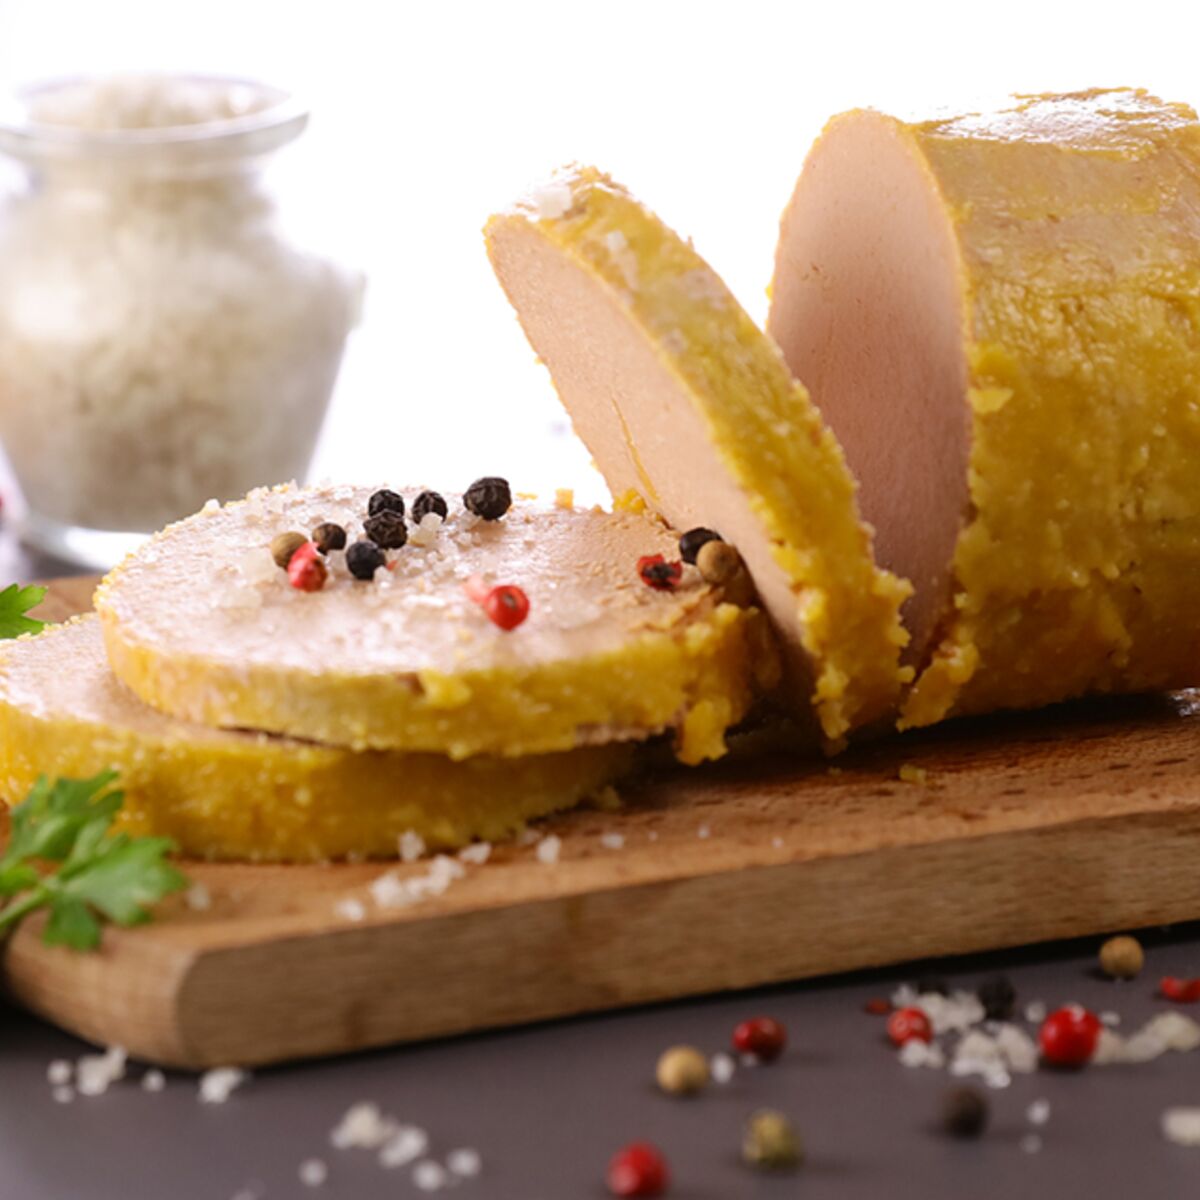 Comment faire son foie gras maison ?